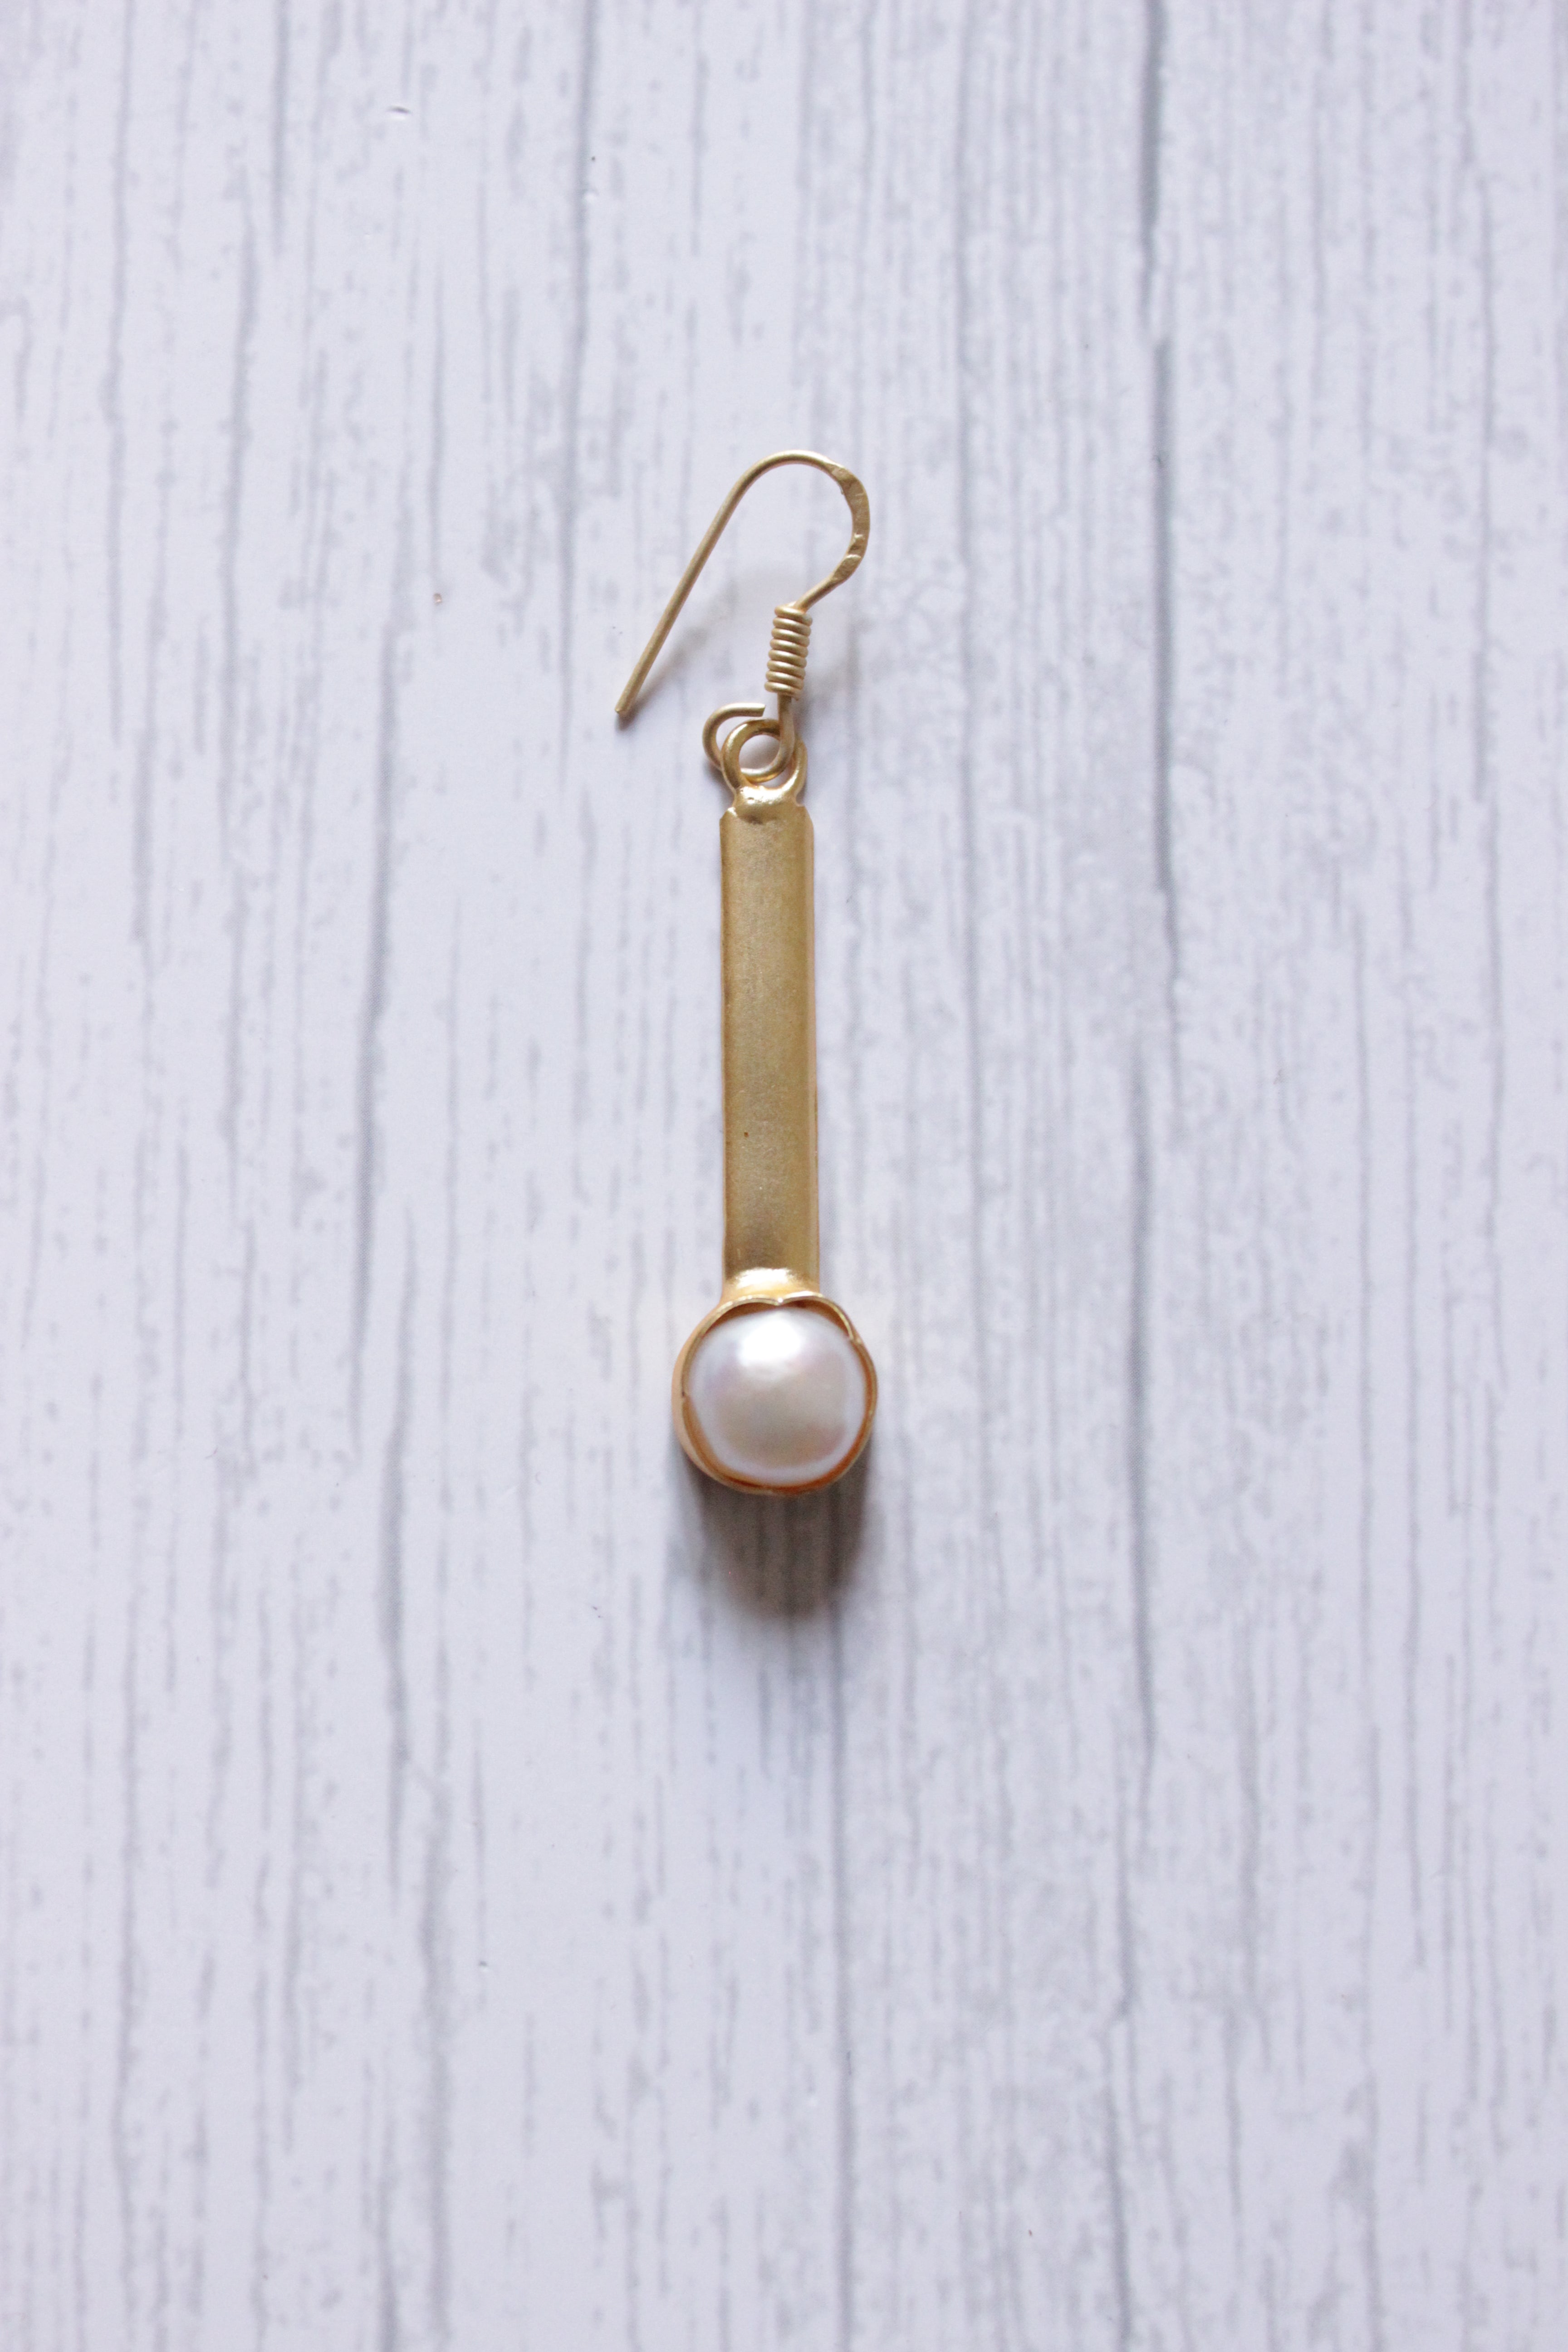 Baroque Pearl Gemstone Handmade Gold Plated Hook Earrings